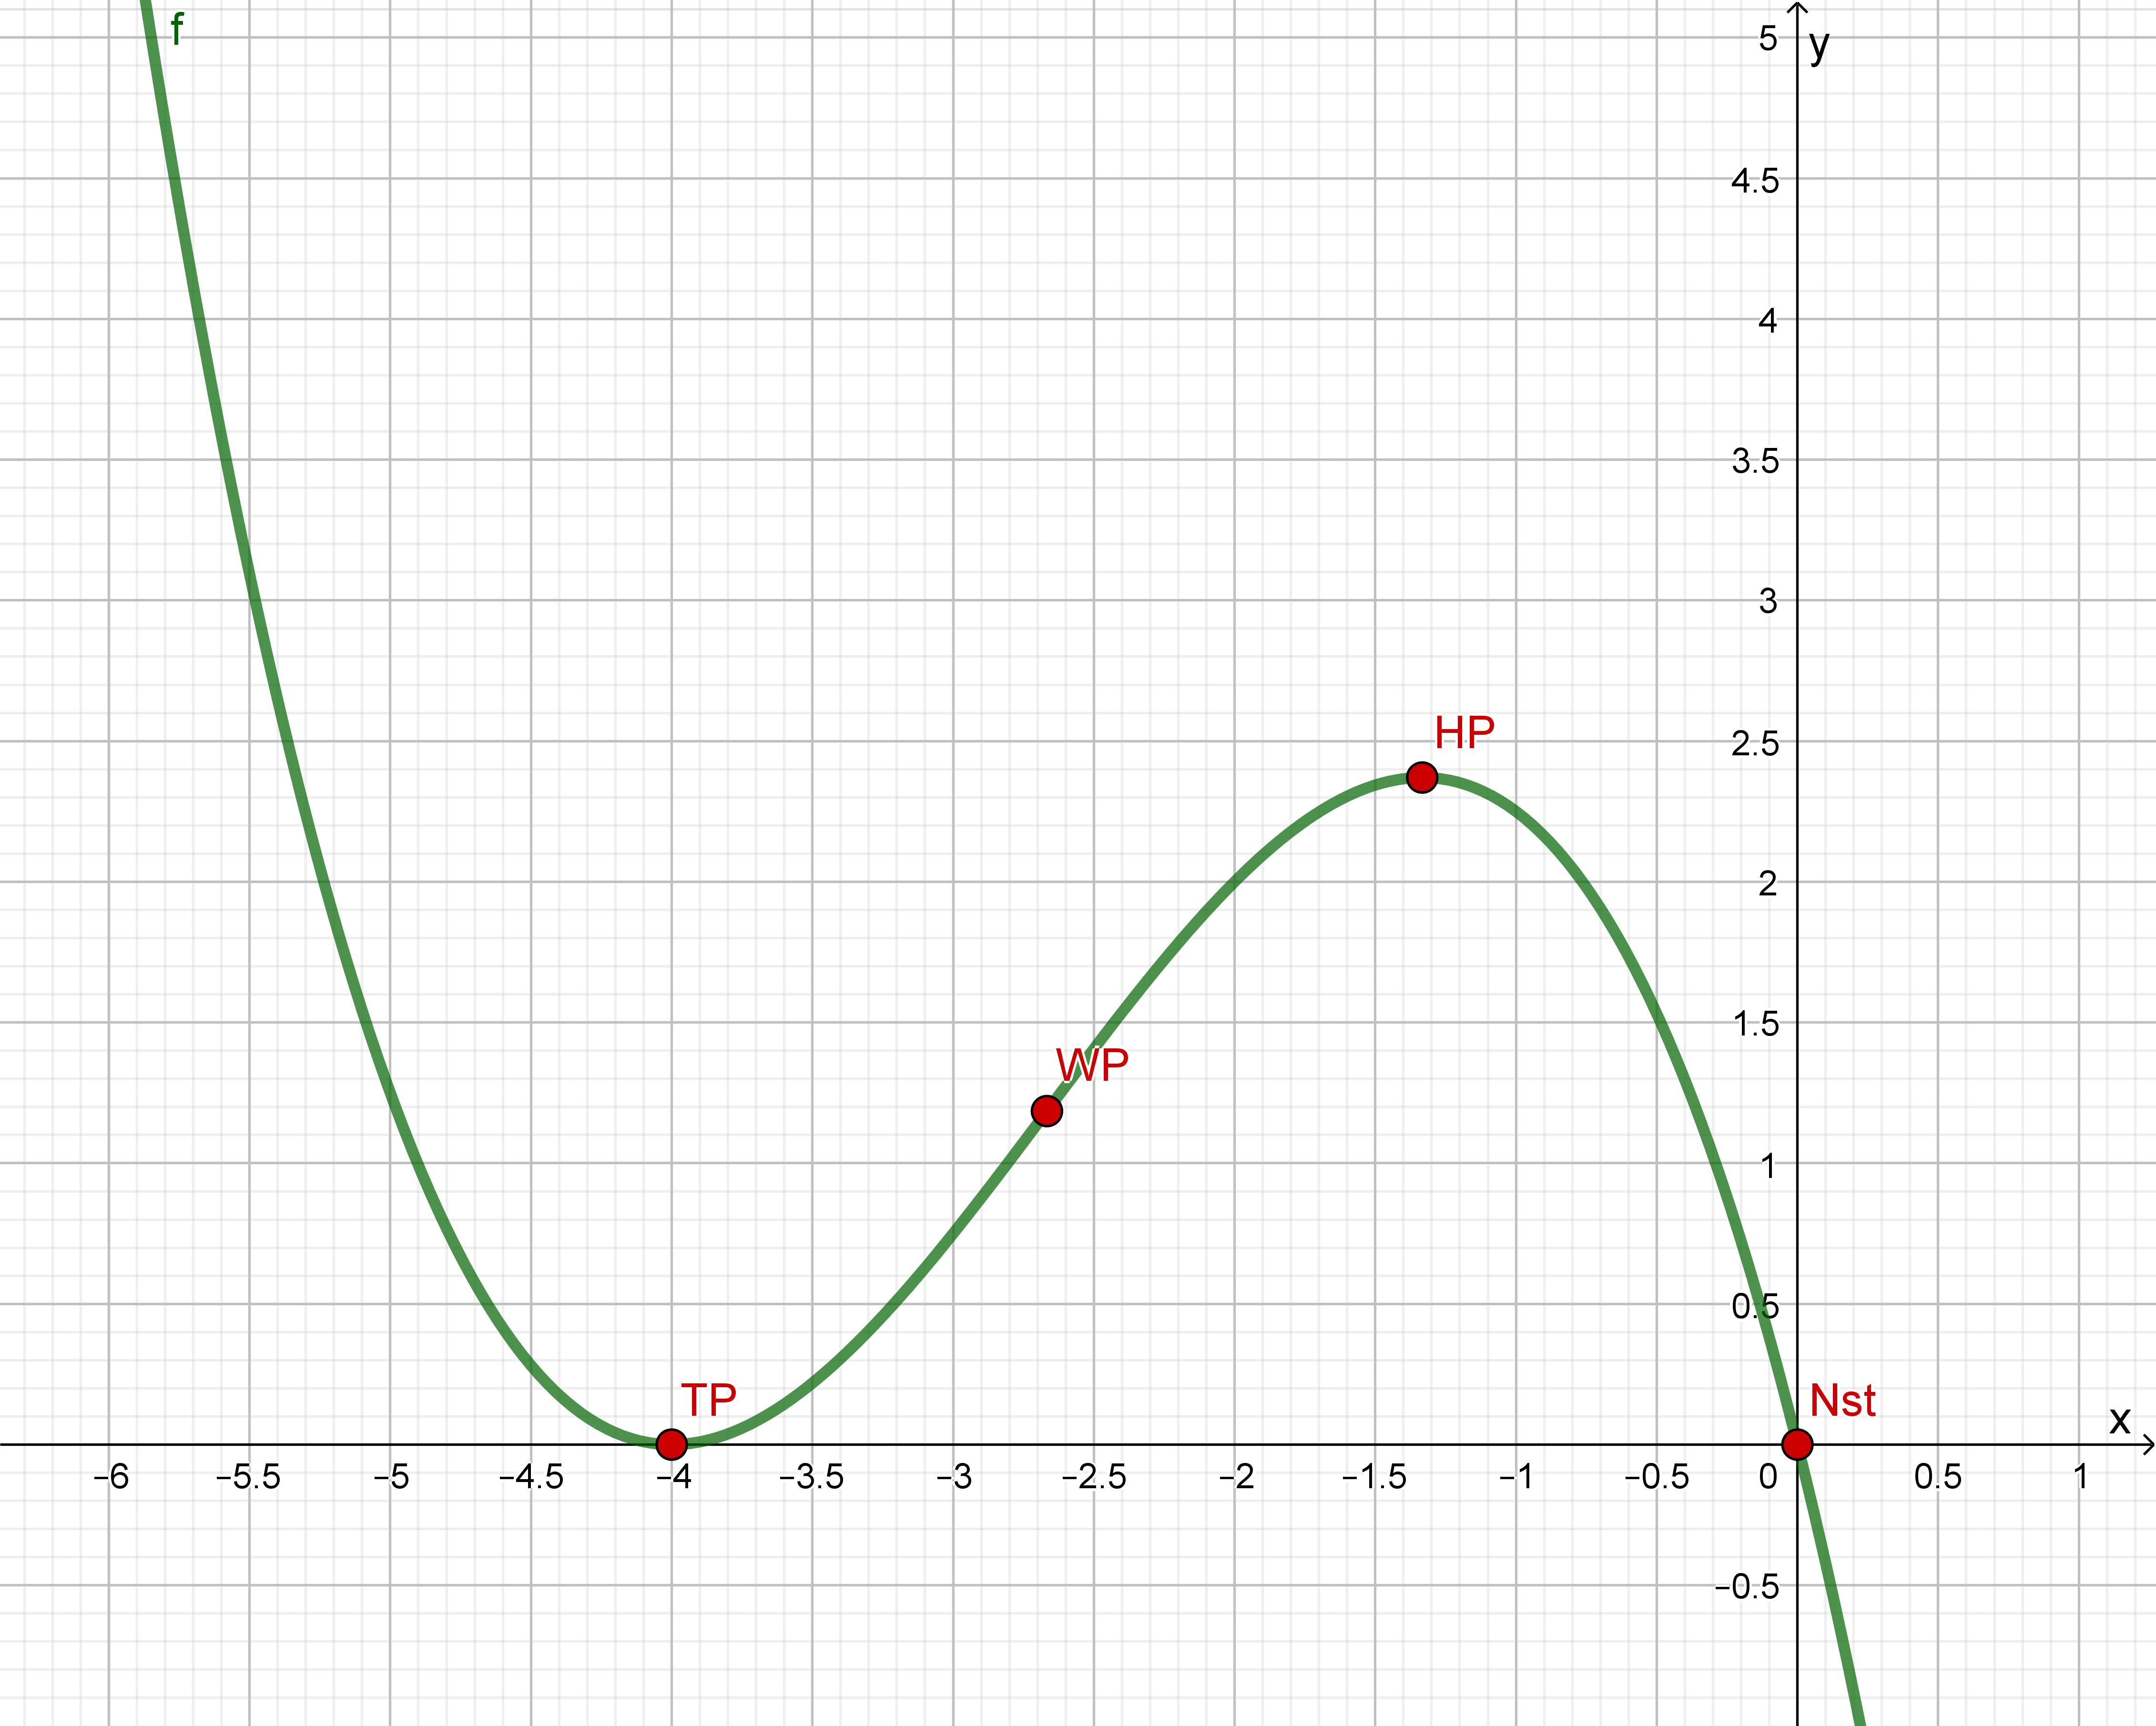 Graph einer Funktion 3. Grades